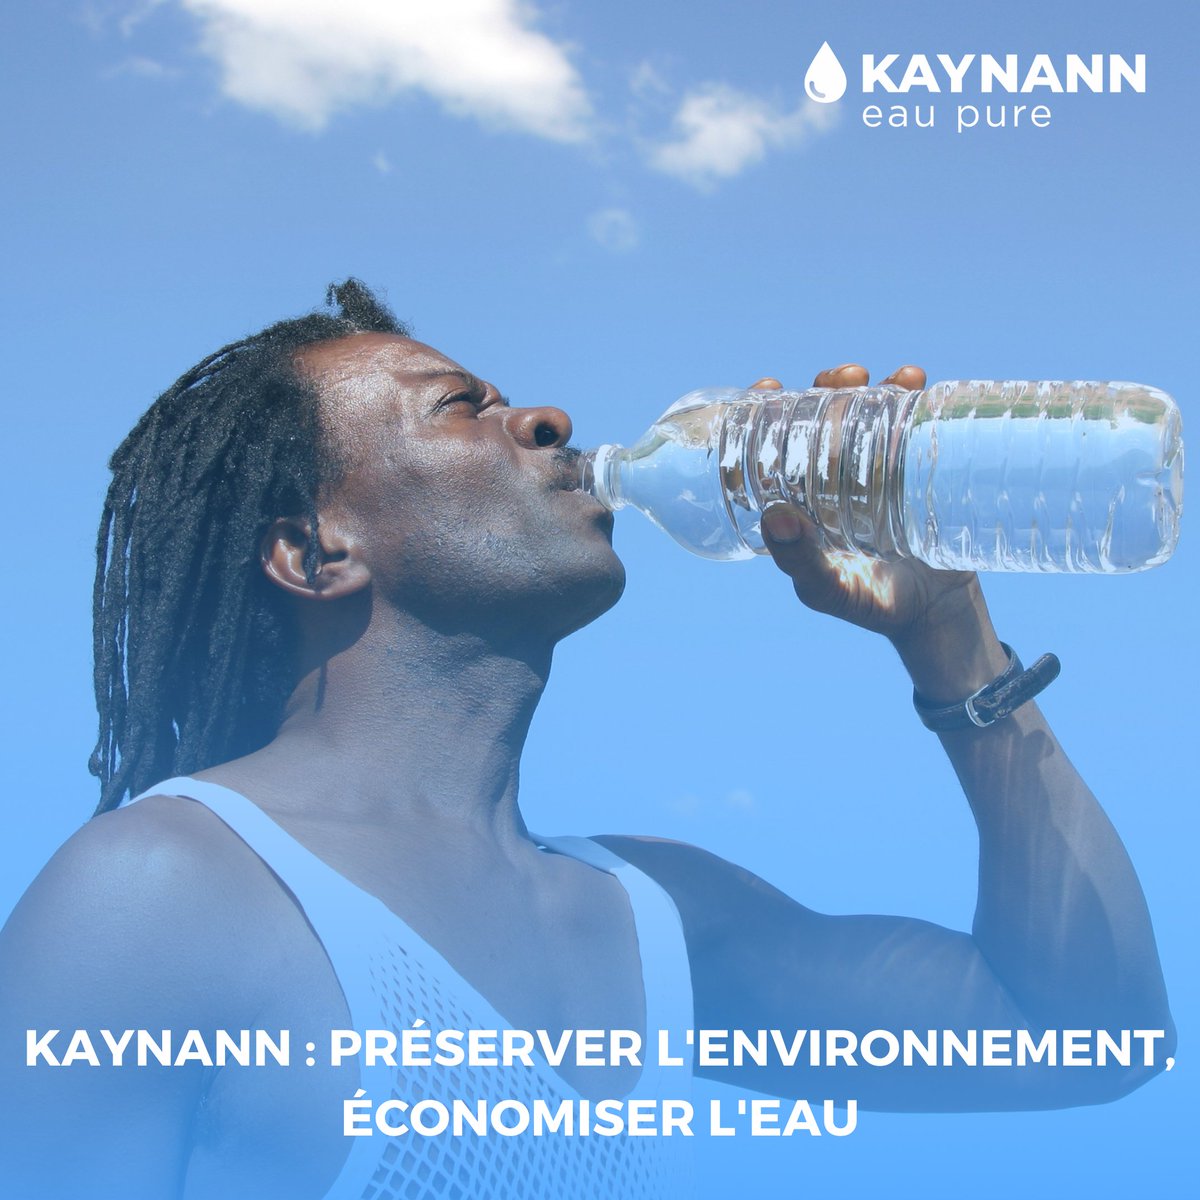 Avec Kaynann, chaque goutte d'eau compte.

Préservez l'environnement tout en économisant l'eau ! 💧

#Kaynann #EauPure #Environnement